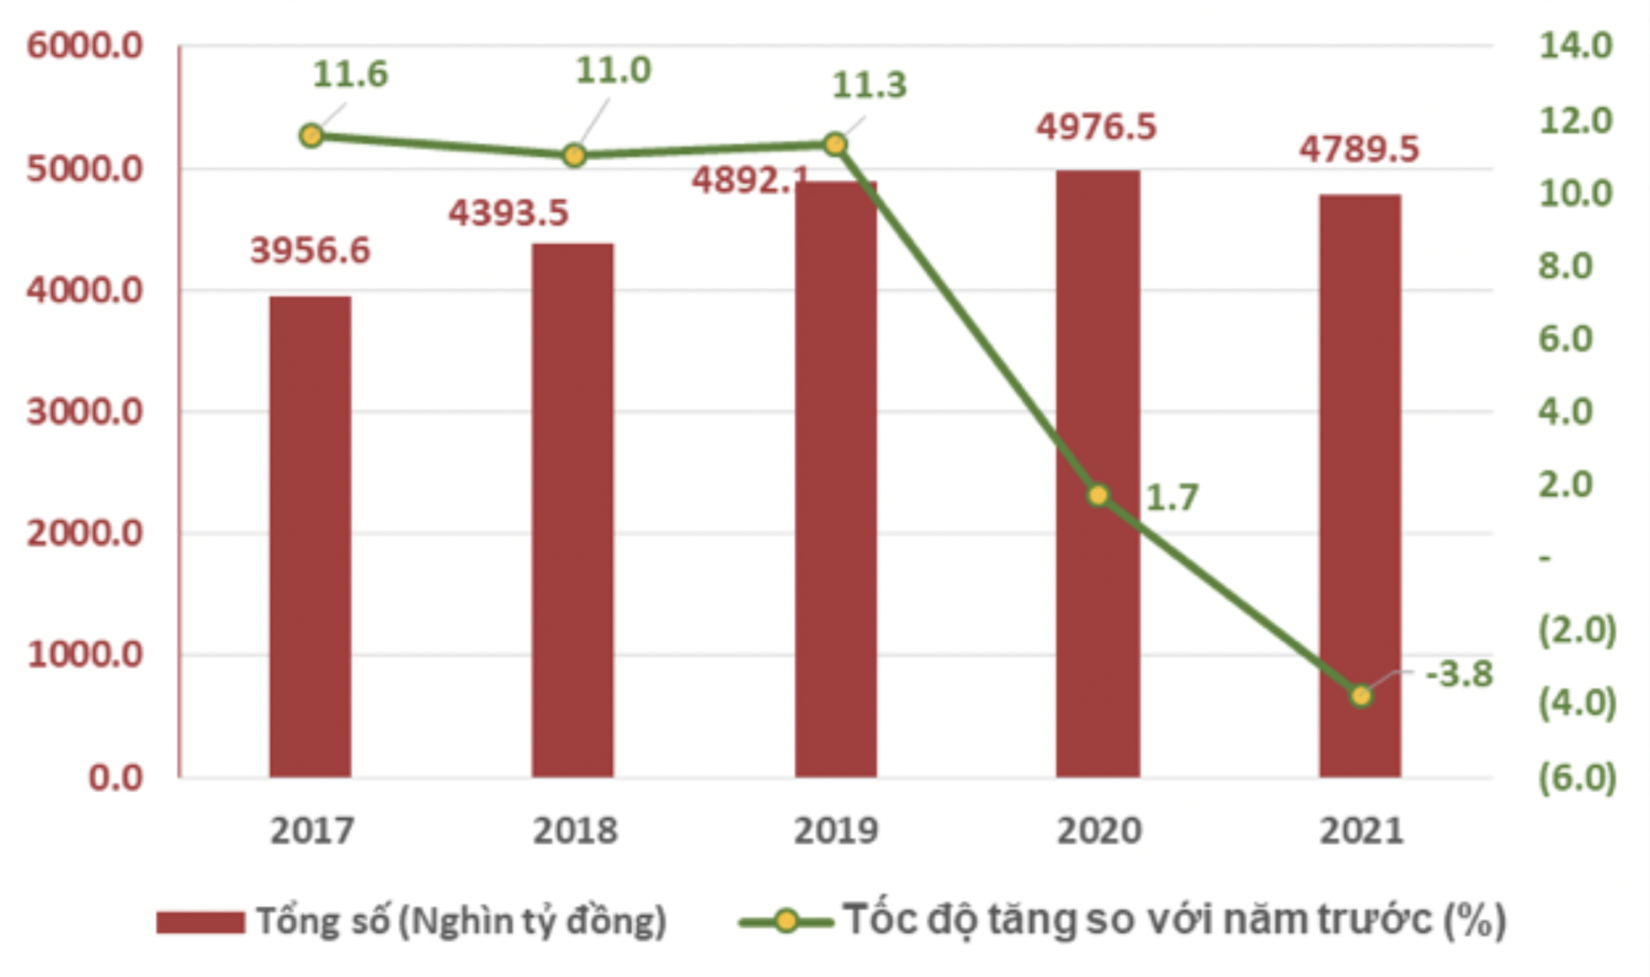 Kinh tế Việt Nam 2021: Doanh nghiệp rời bỏ thị trường và tiêu dùng tiêu điều